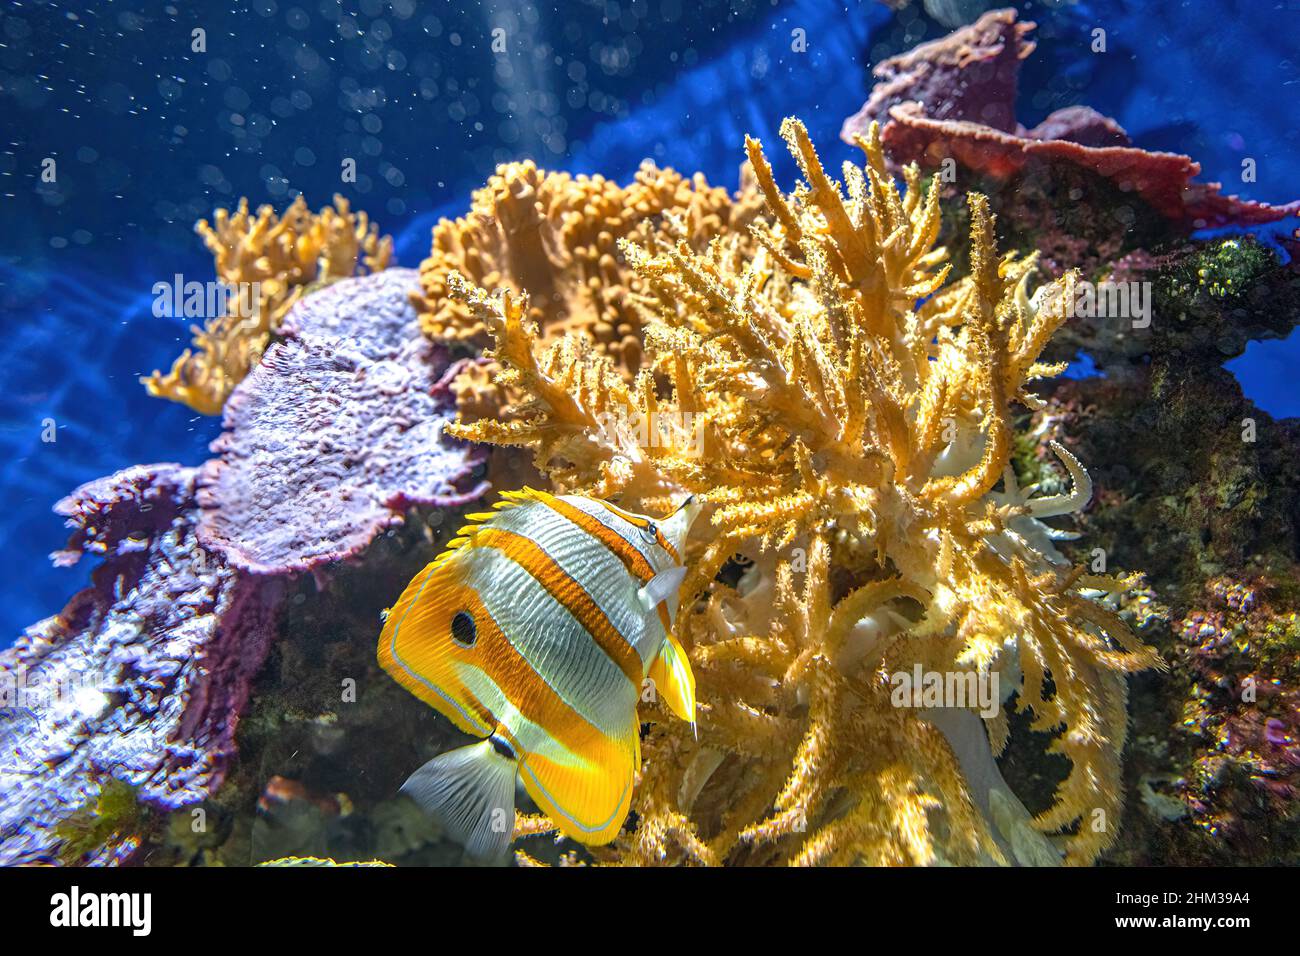 Poisson-mouche Copperband ou poisson corail en bec dans le récif de corail.Chelmon rostratus espèce de butterflyfish appartenant à la famille des Chaetodontidae.Vie Banque D'Images